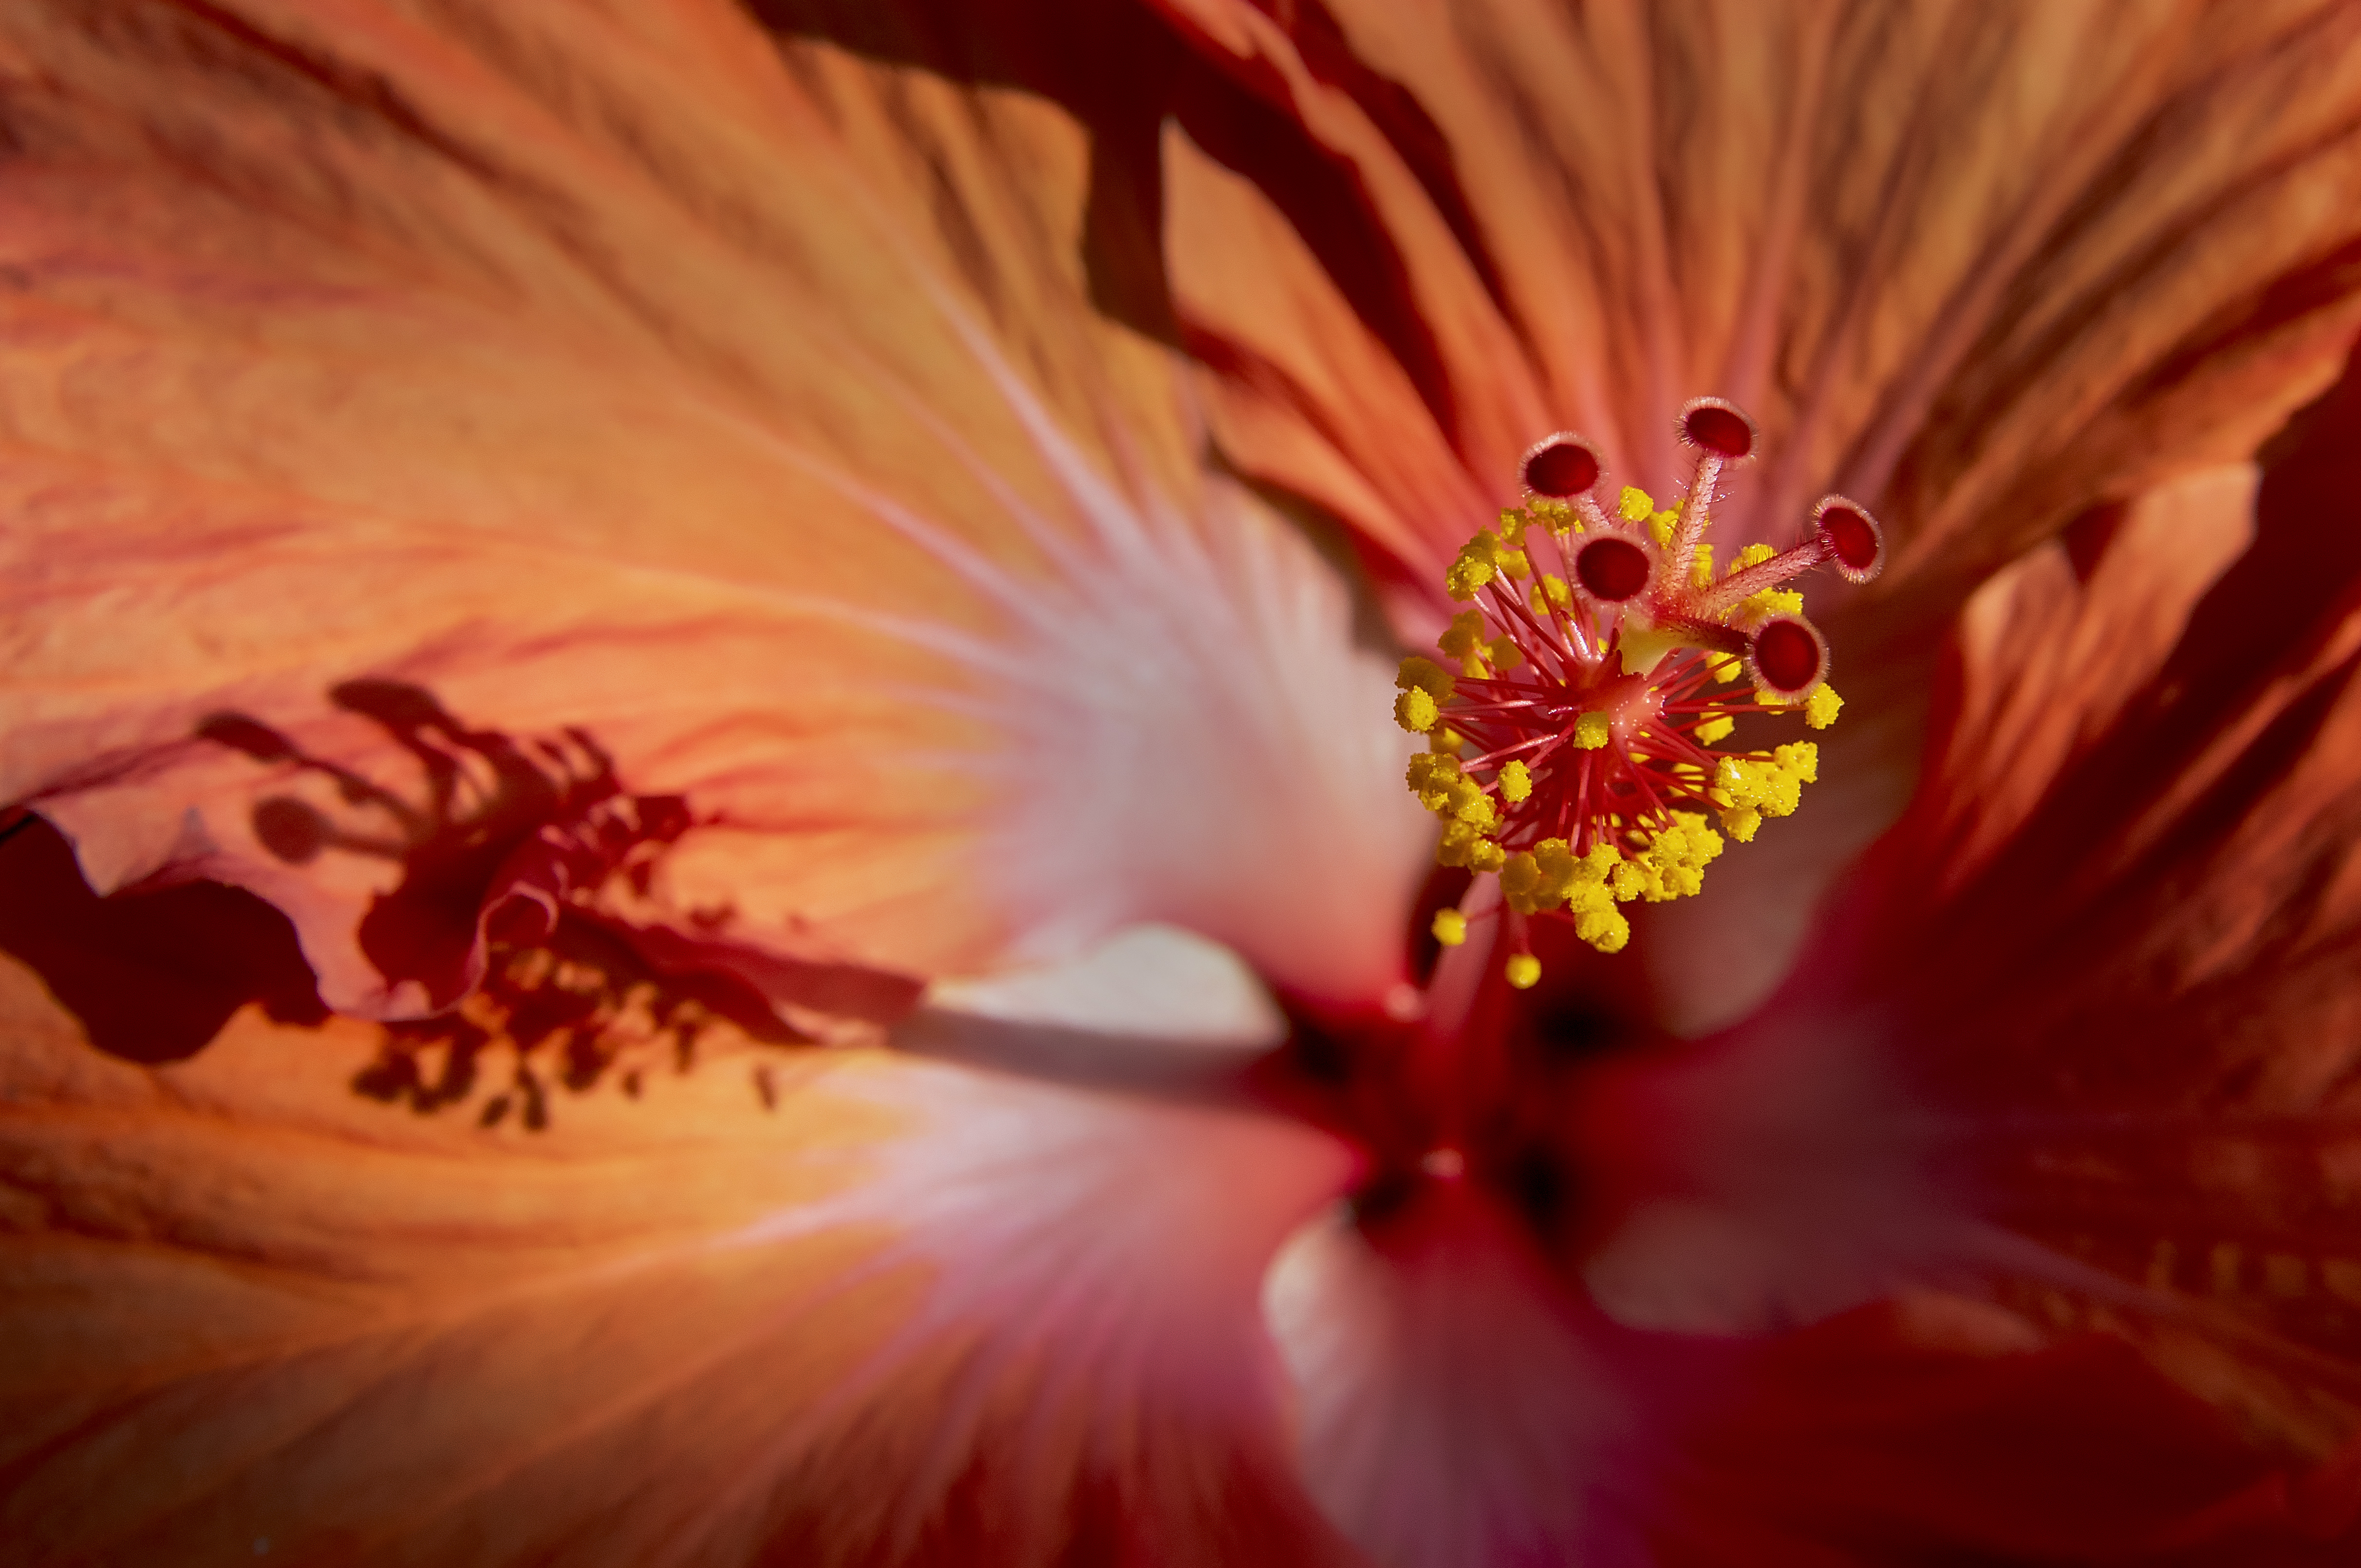 Inside of flower